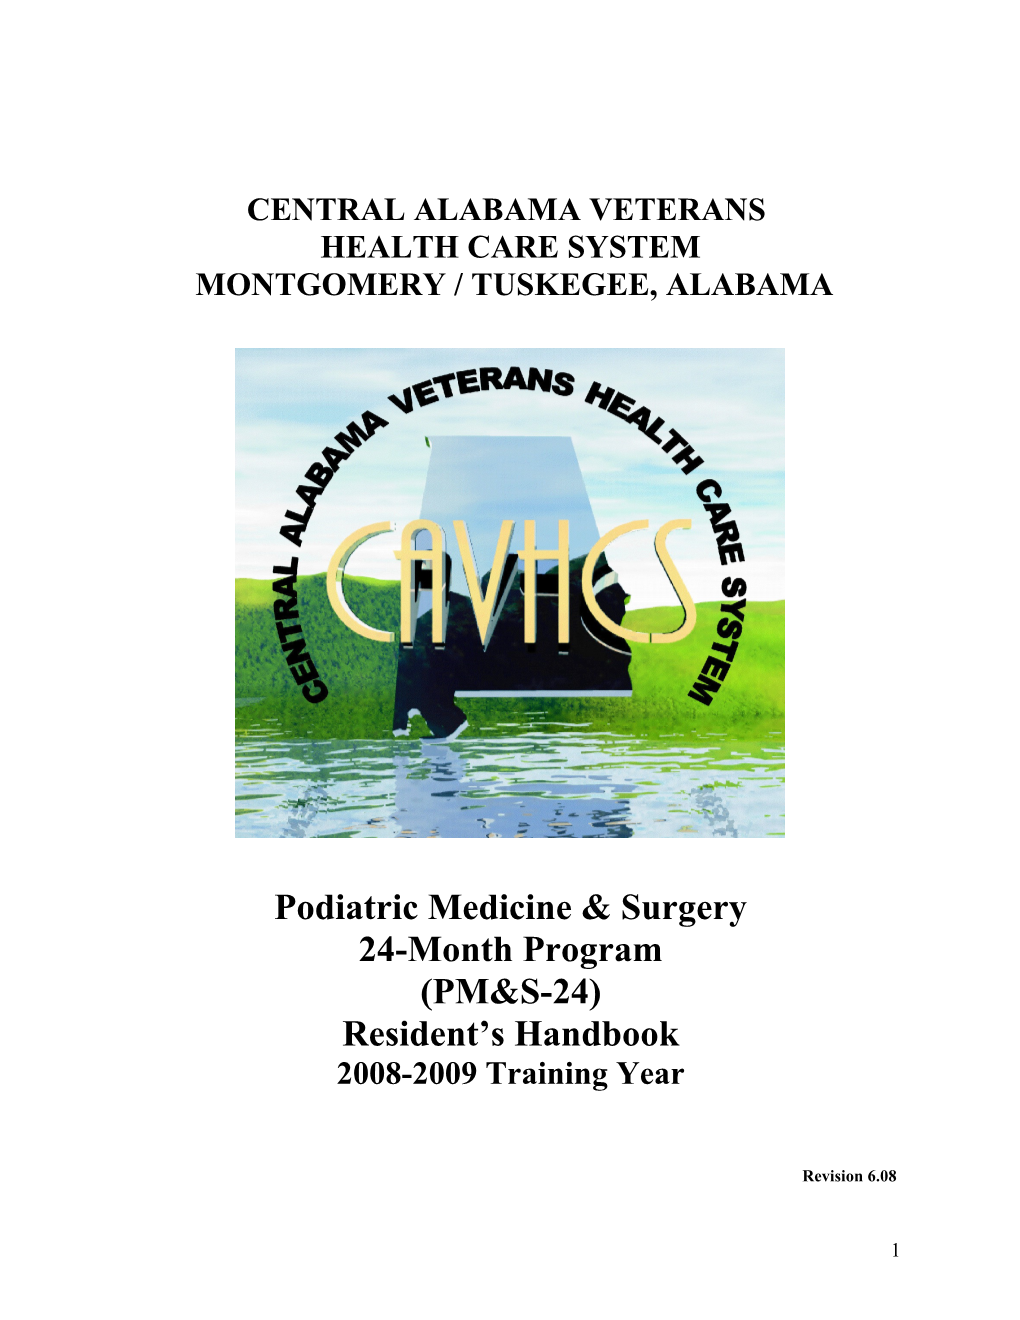 The Central Alabama Veteran Health Care System (CAVHCS) Podiatric Medical Residency Program